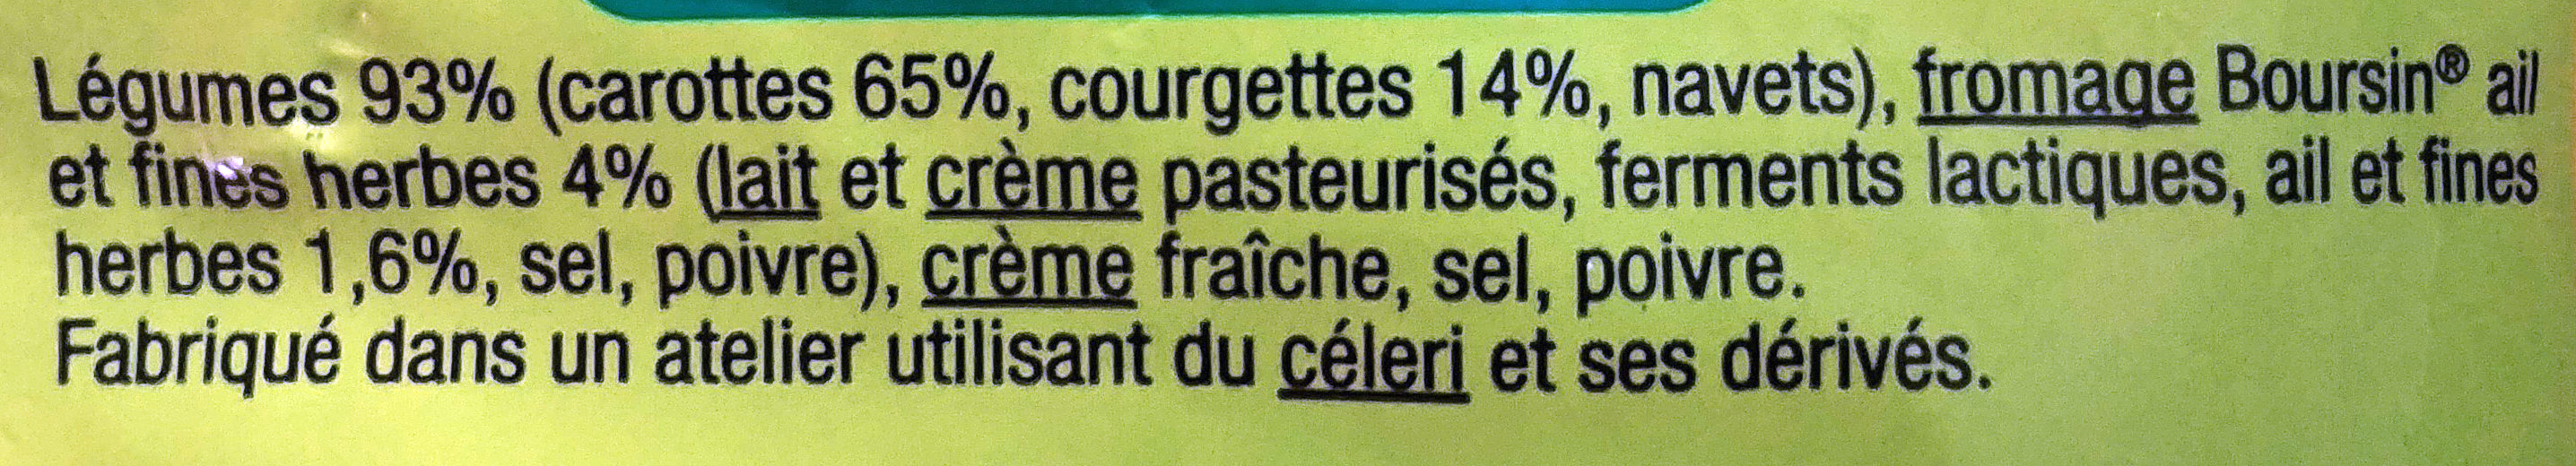 Puree De Courgettes Carottes Jaunes Boursin D'aucy - Ingredienser - fr